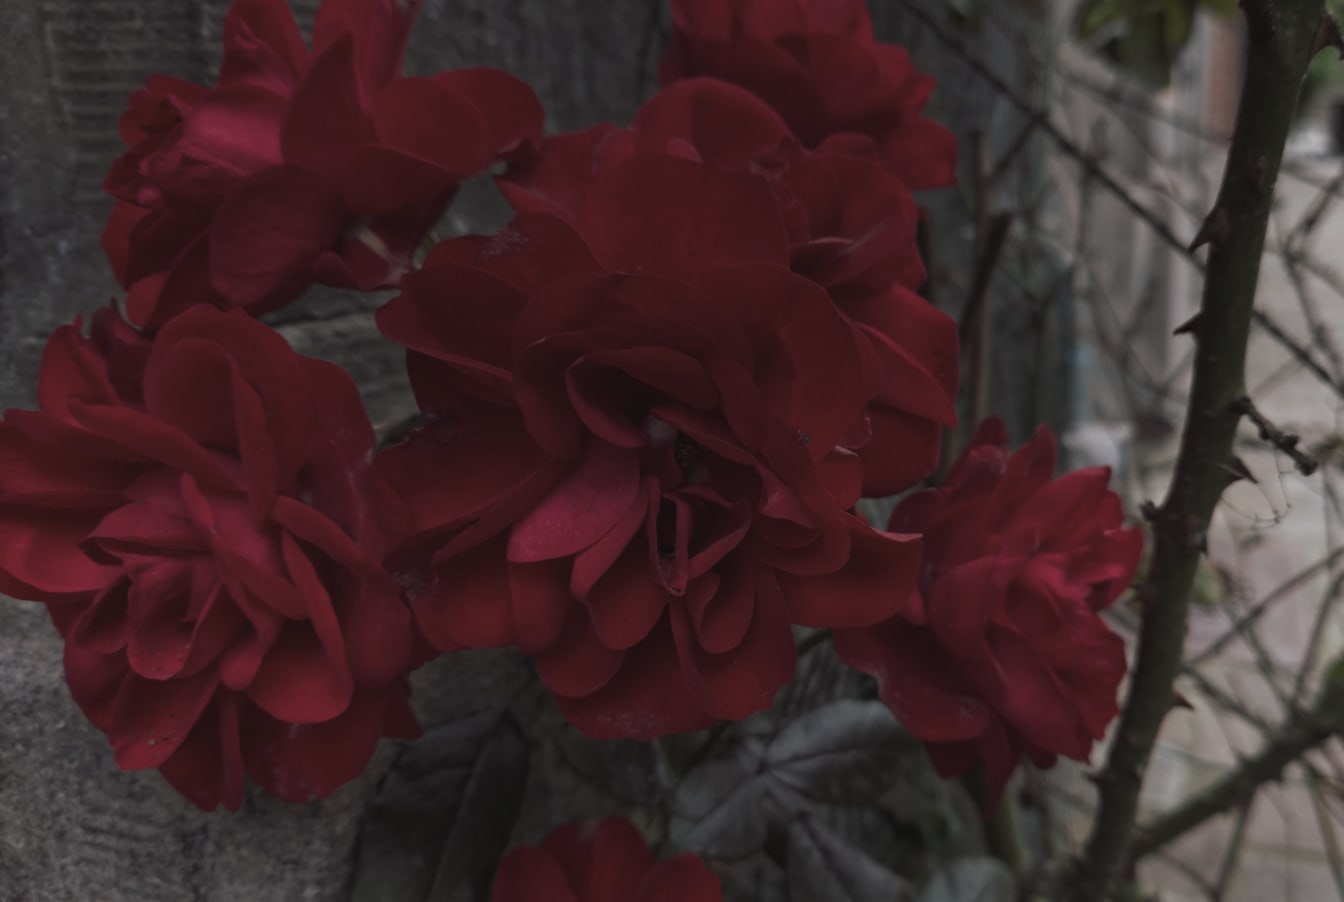 Pastelno tamnocrveno cvijeće pupoljaka ruže u vrtu u dvorištu